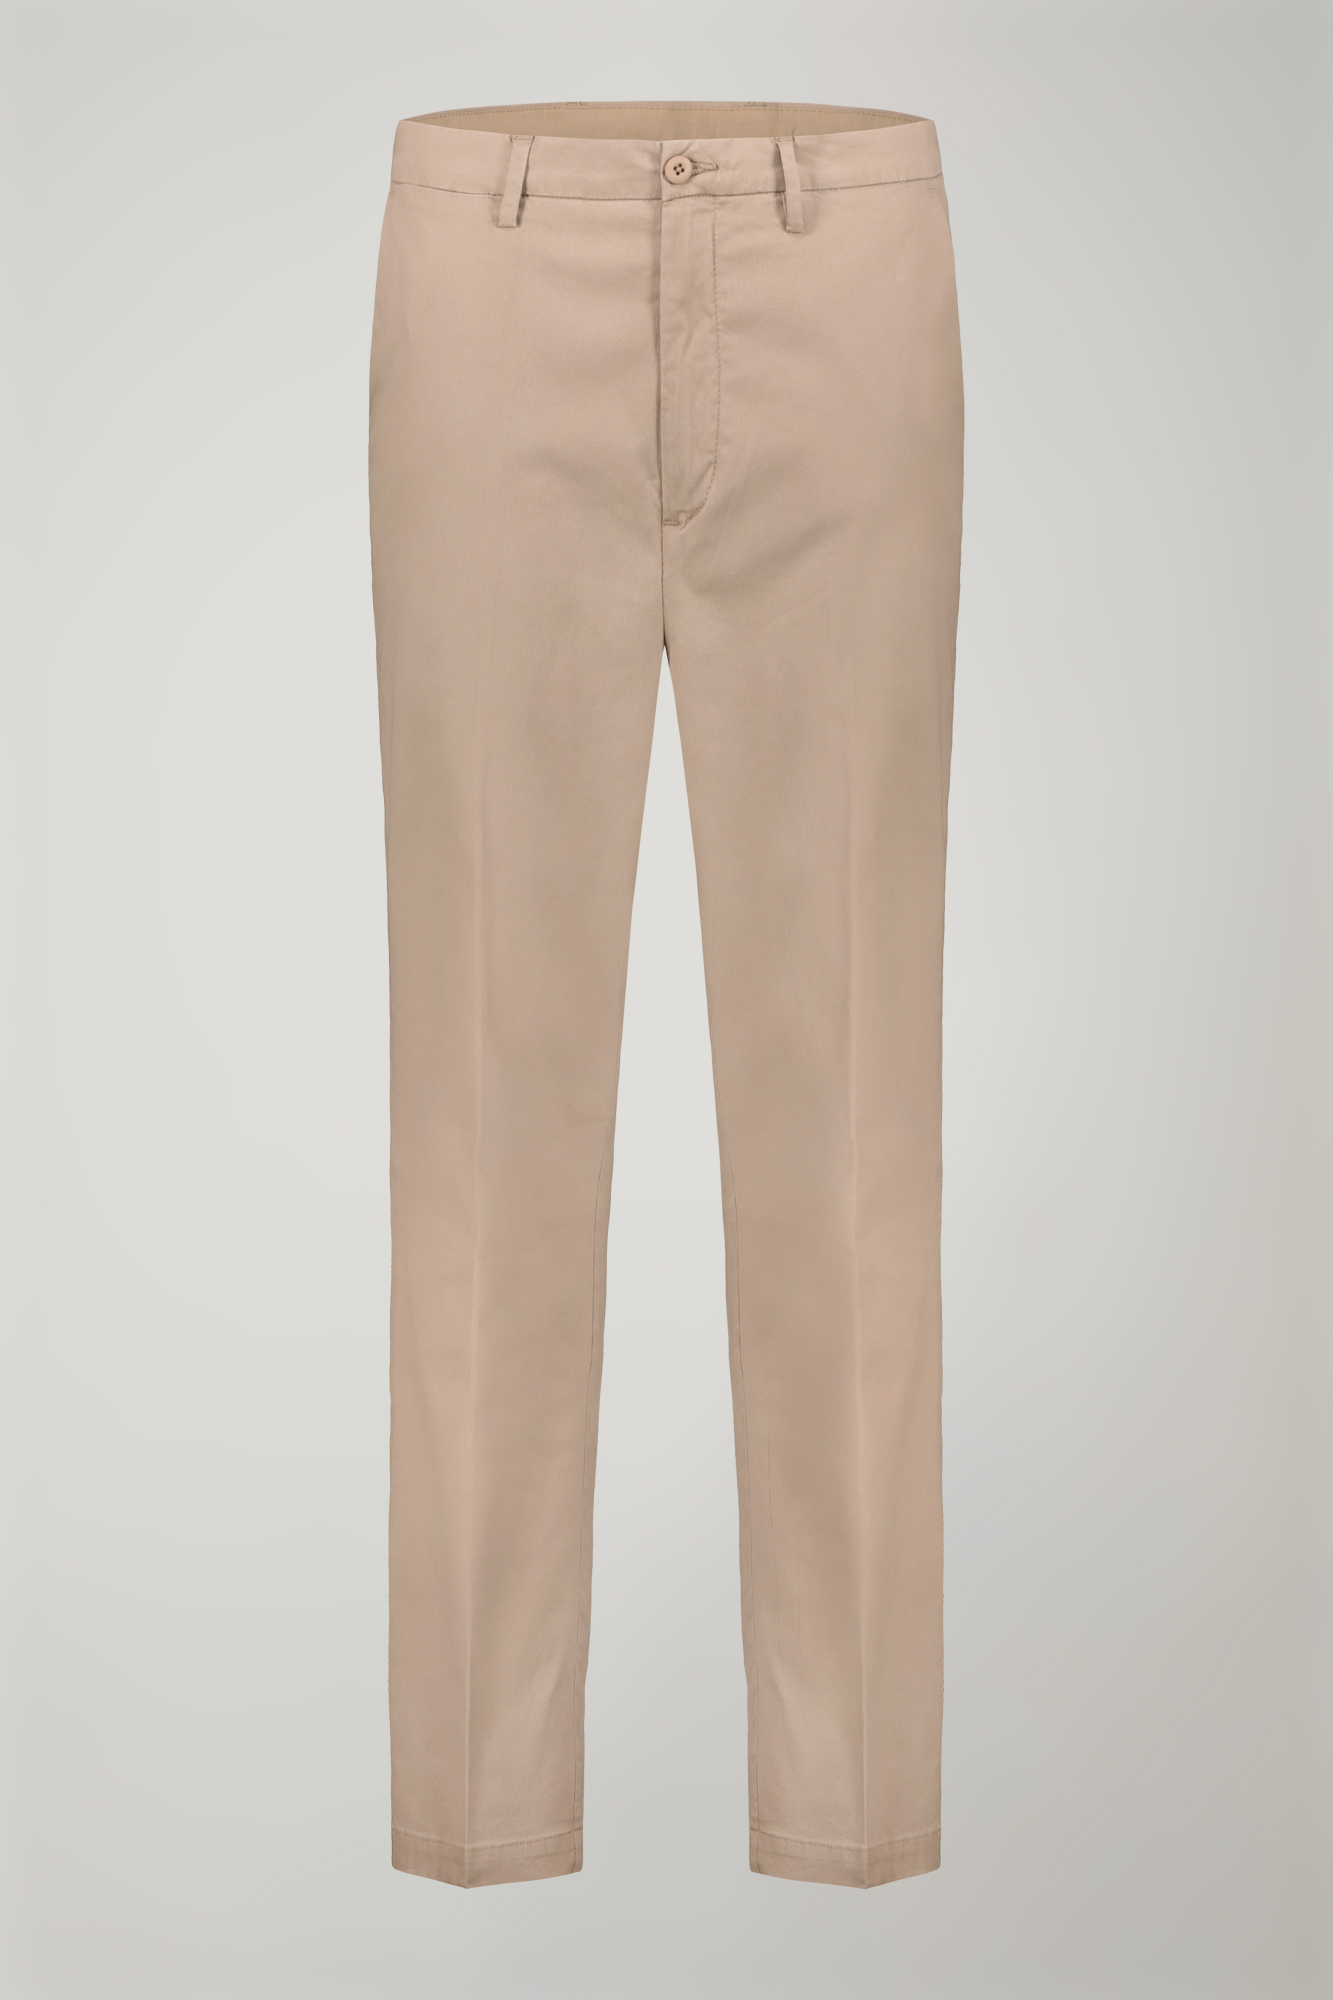 Pantalone uomo classico tessuto in cotone bacchettato tinto in capo regular fit image number null